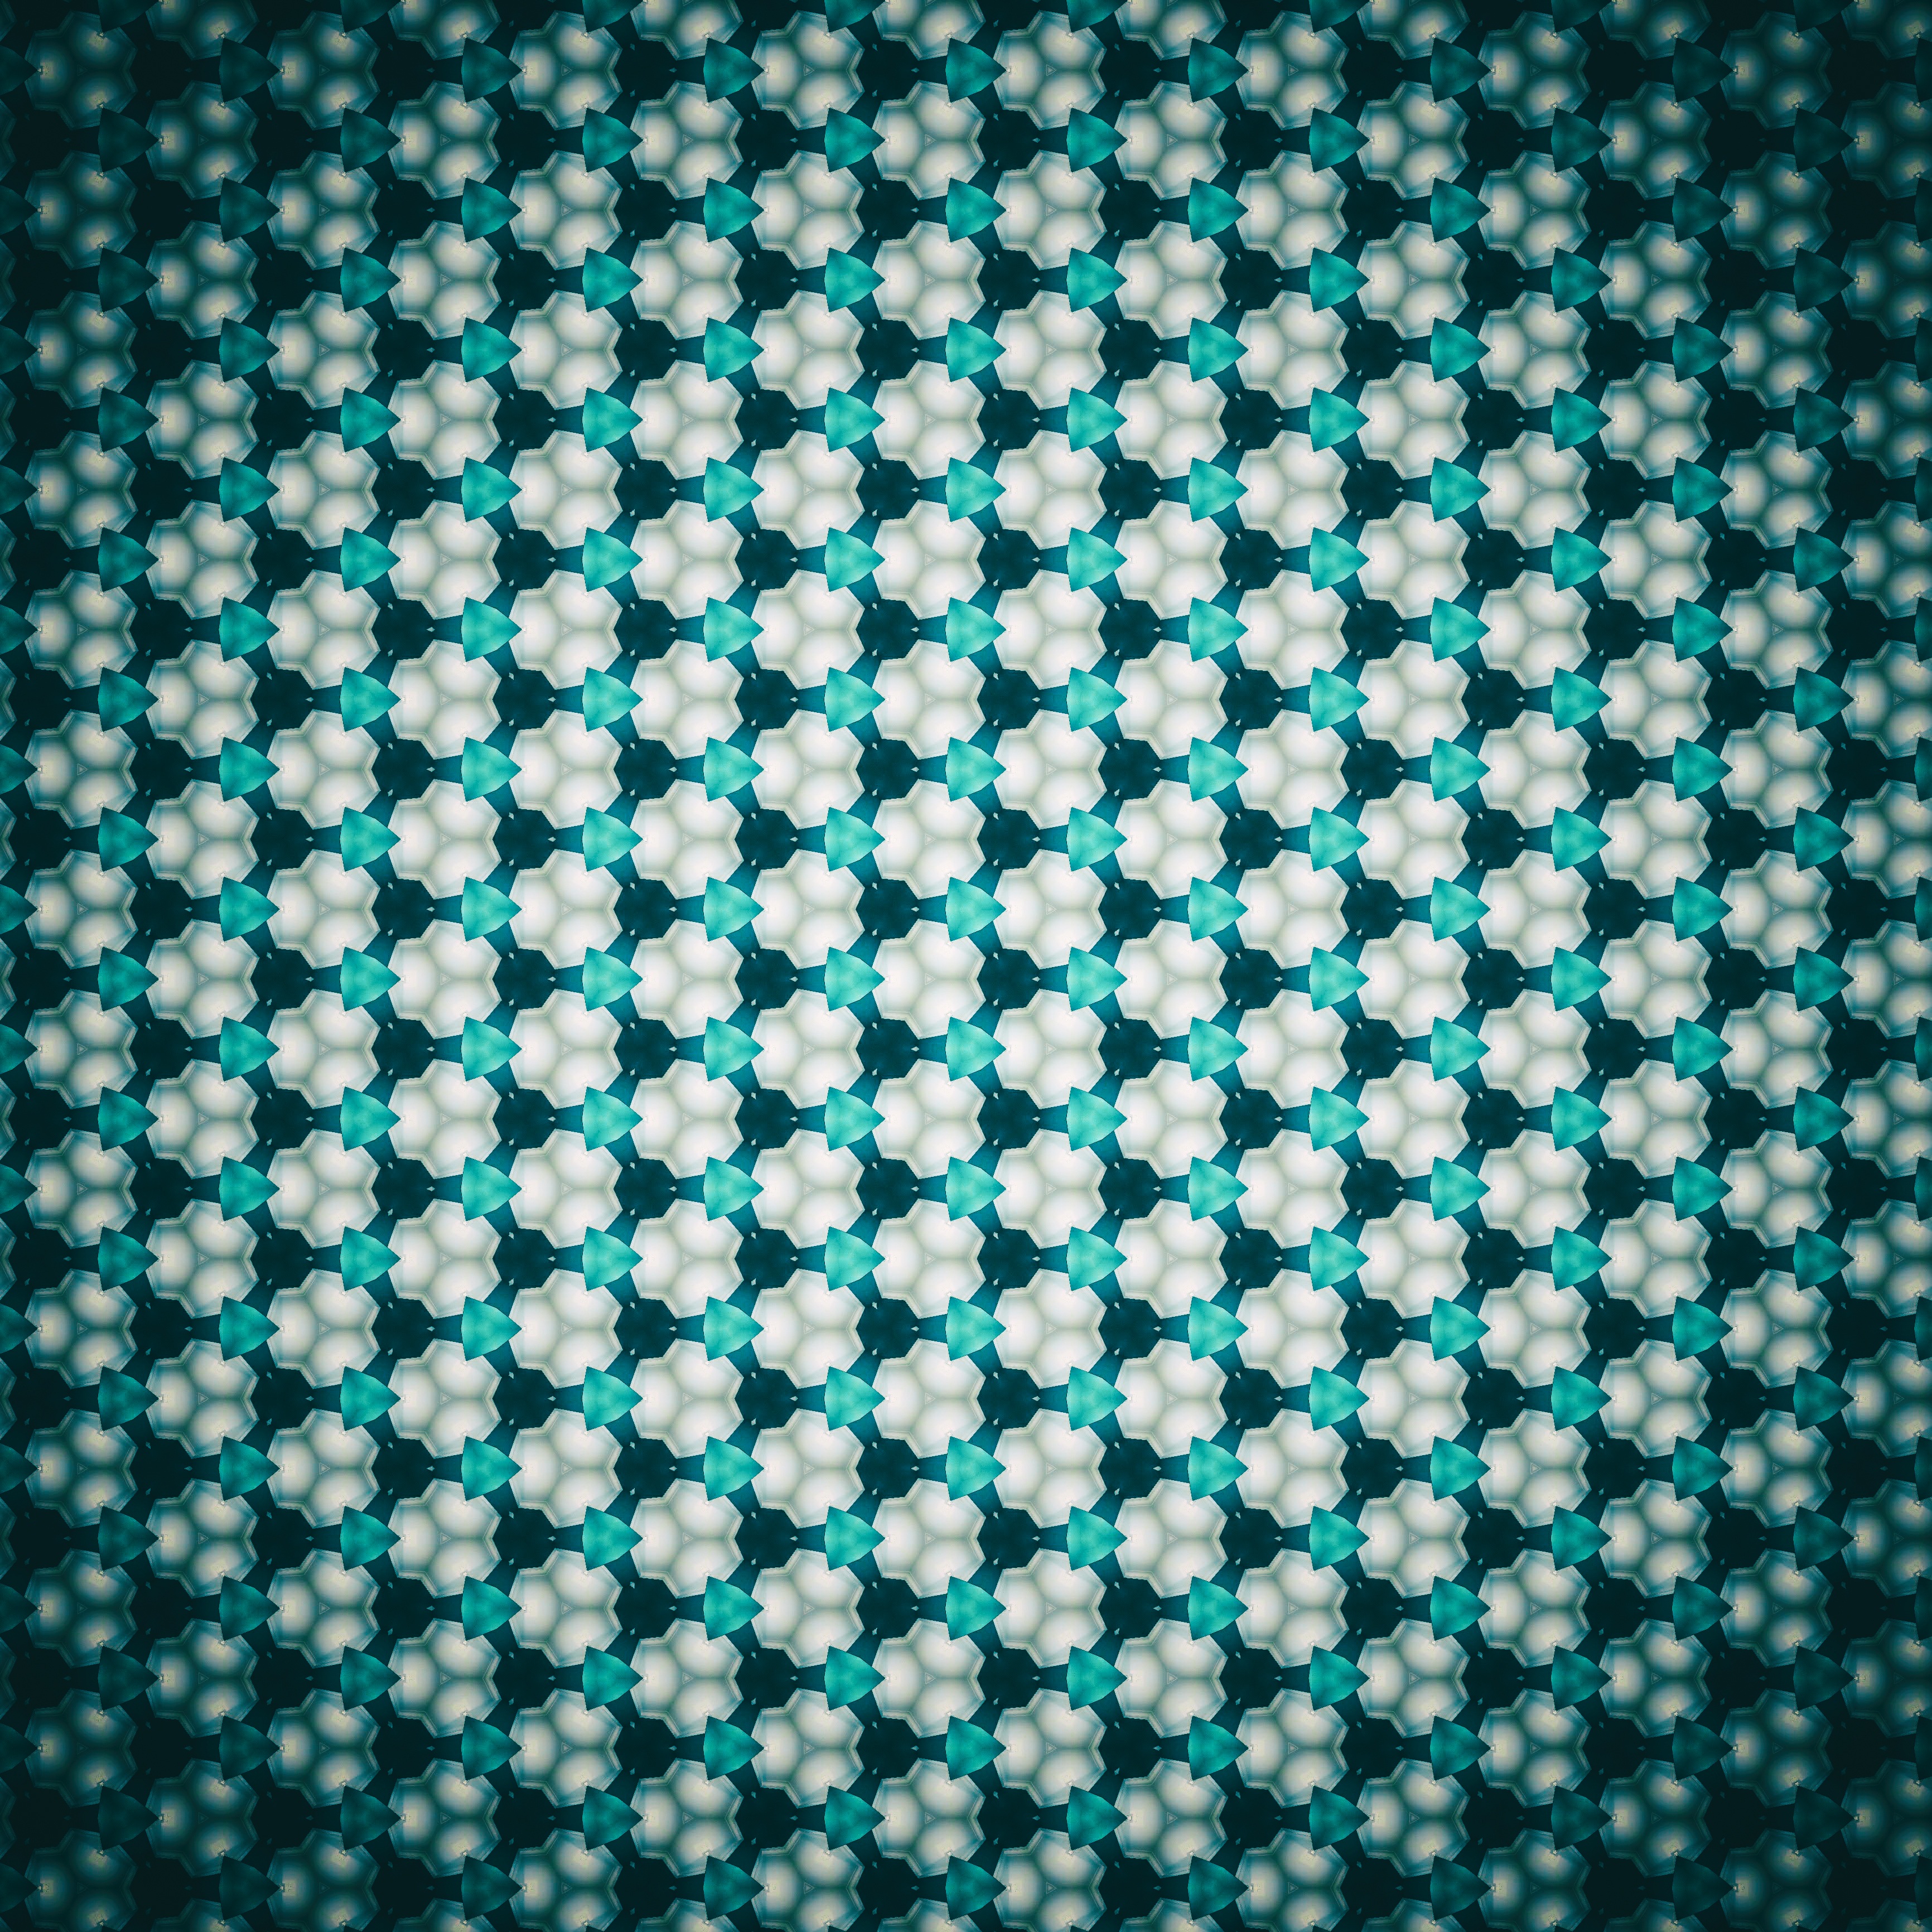 Patterns kaleidoscope, abstract, vignette Desktop FHD